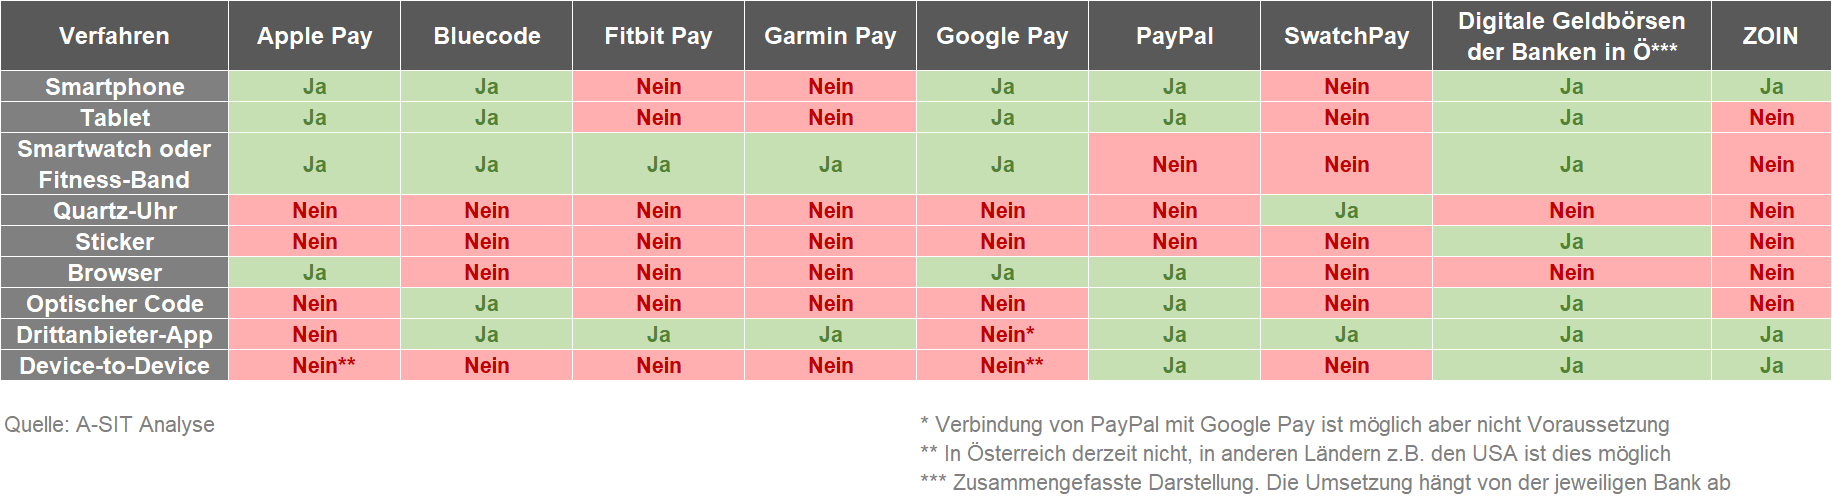 Unterstützte Verfahren der Top 9 Mobile Payment-Lösungen in Österreich